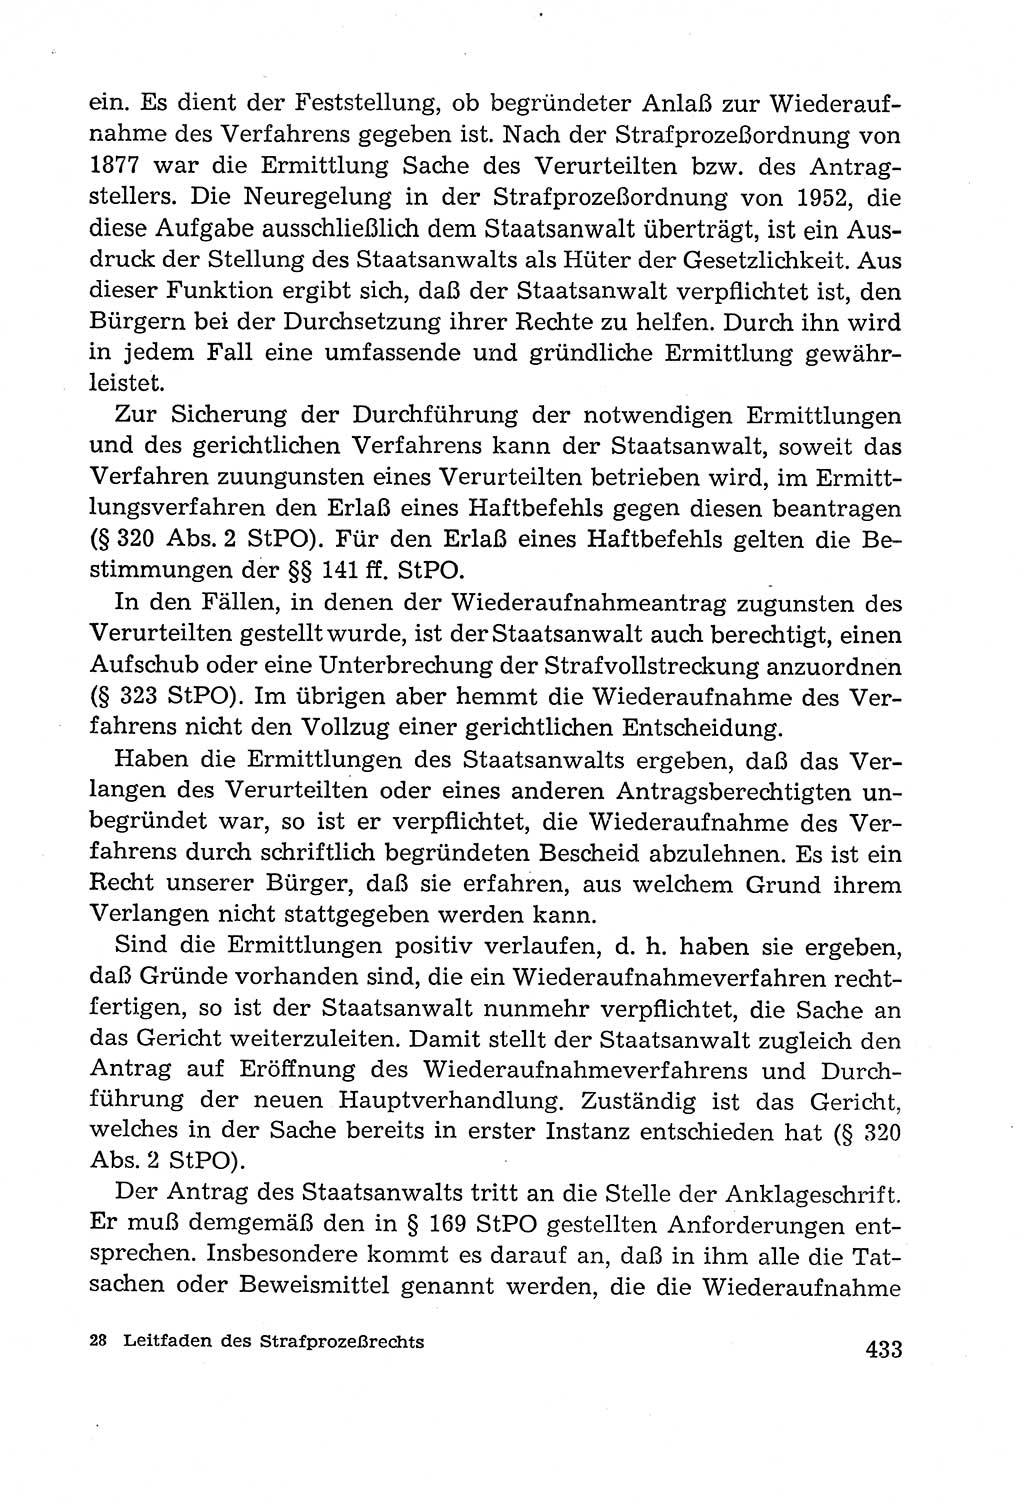 Leitfaden des Strafprozeßrechts der Deutschen Demokratischen Republik (DDR) 1959, Seite 433 (LF StPR DDR 1959, S. 433)